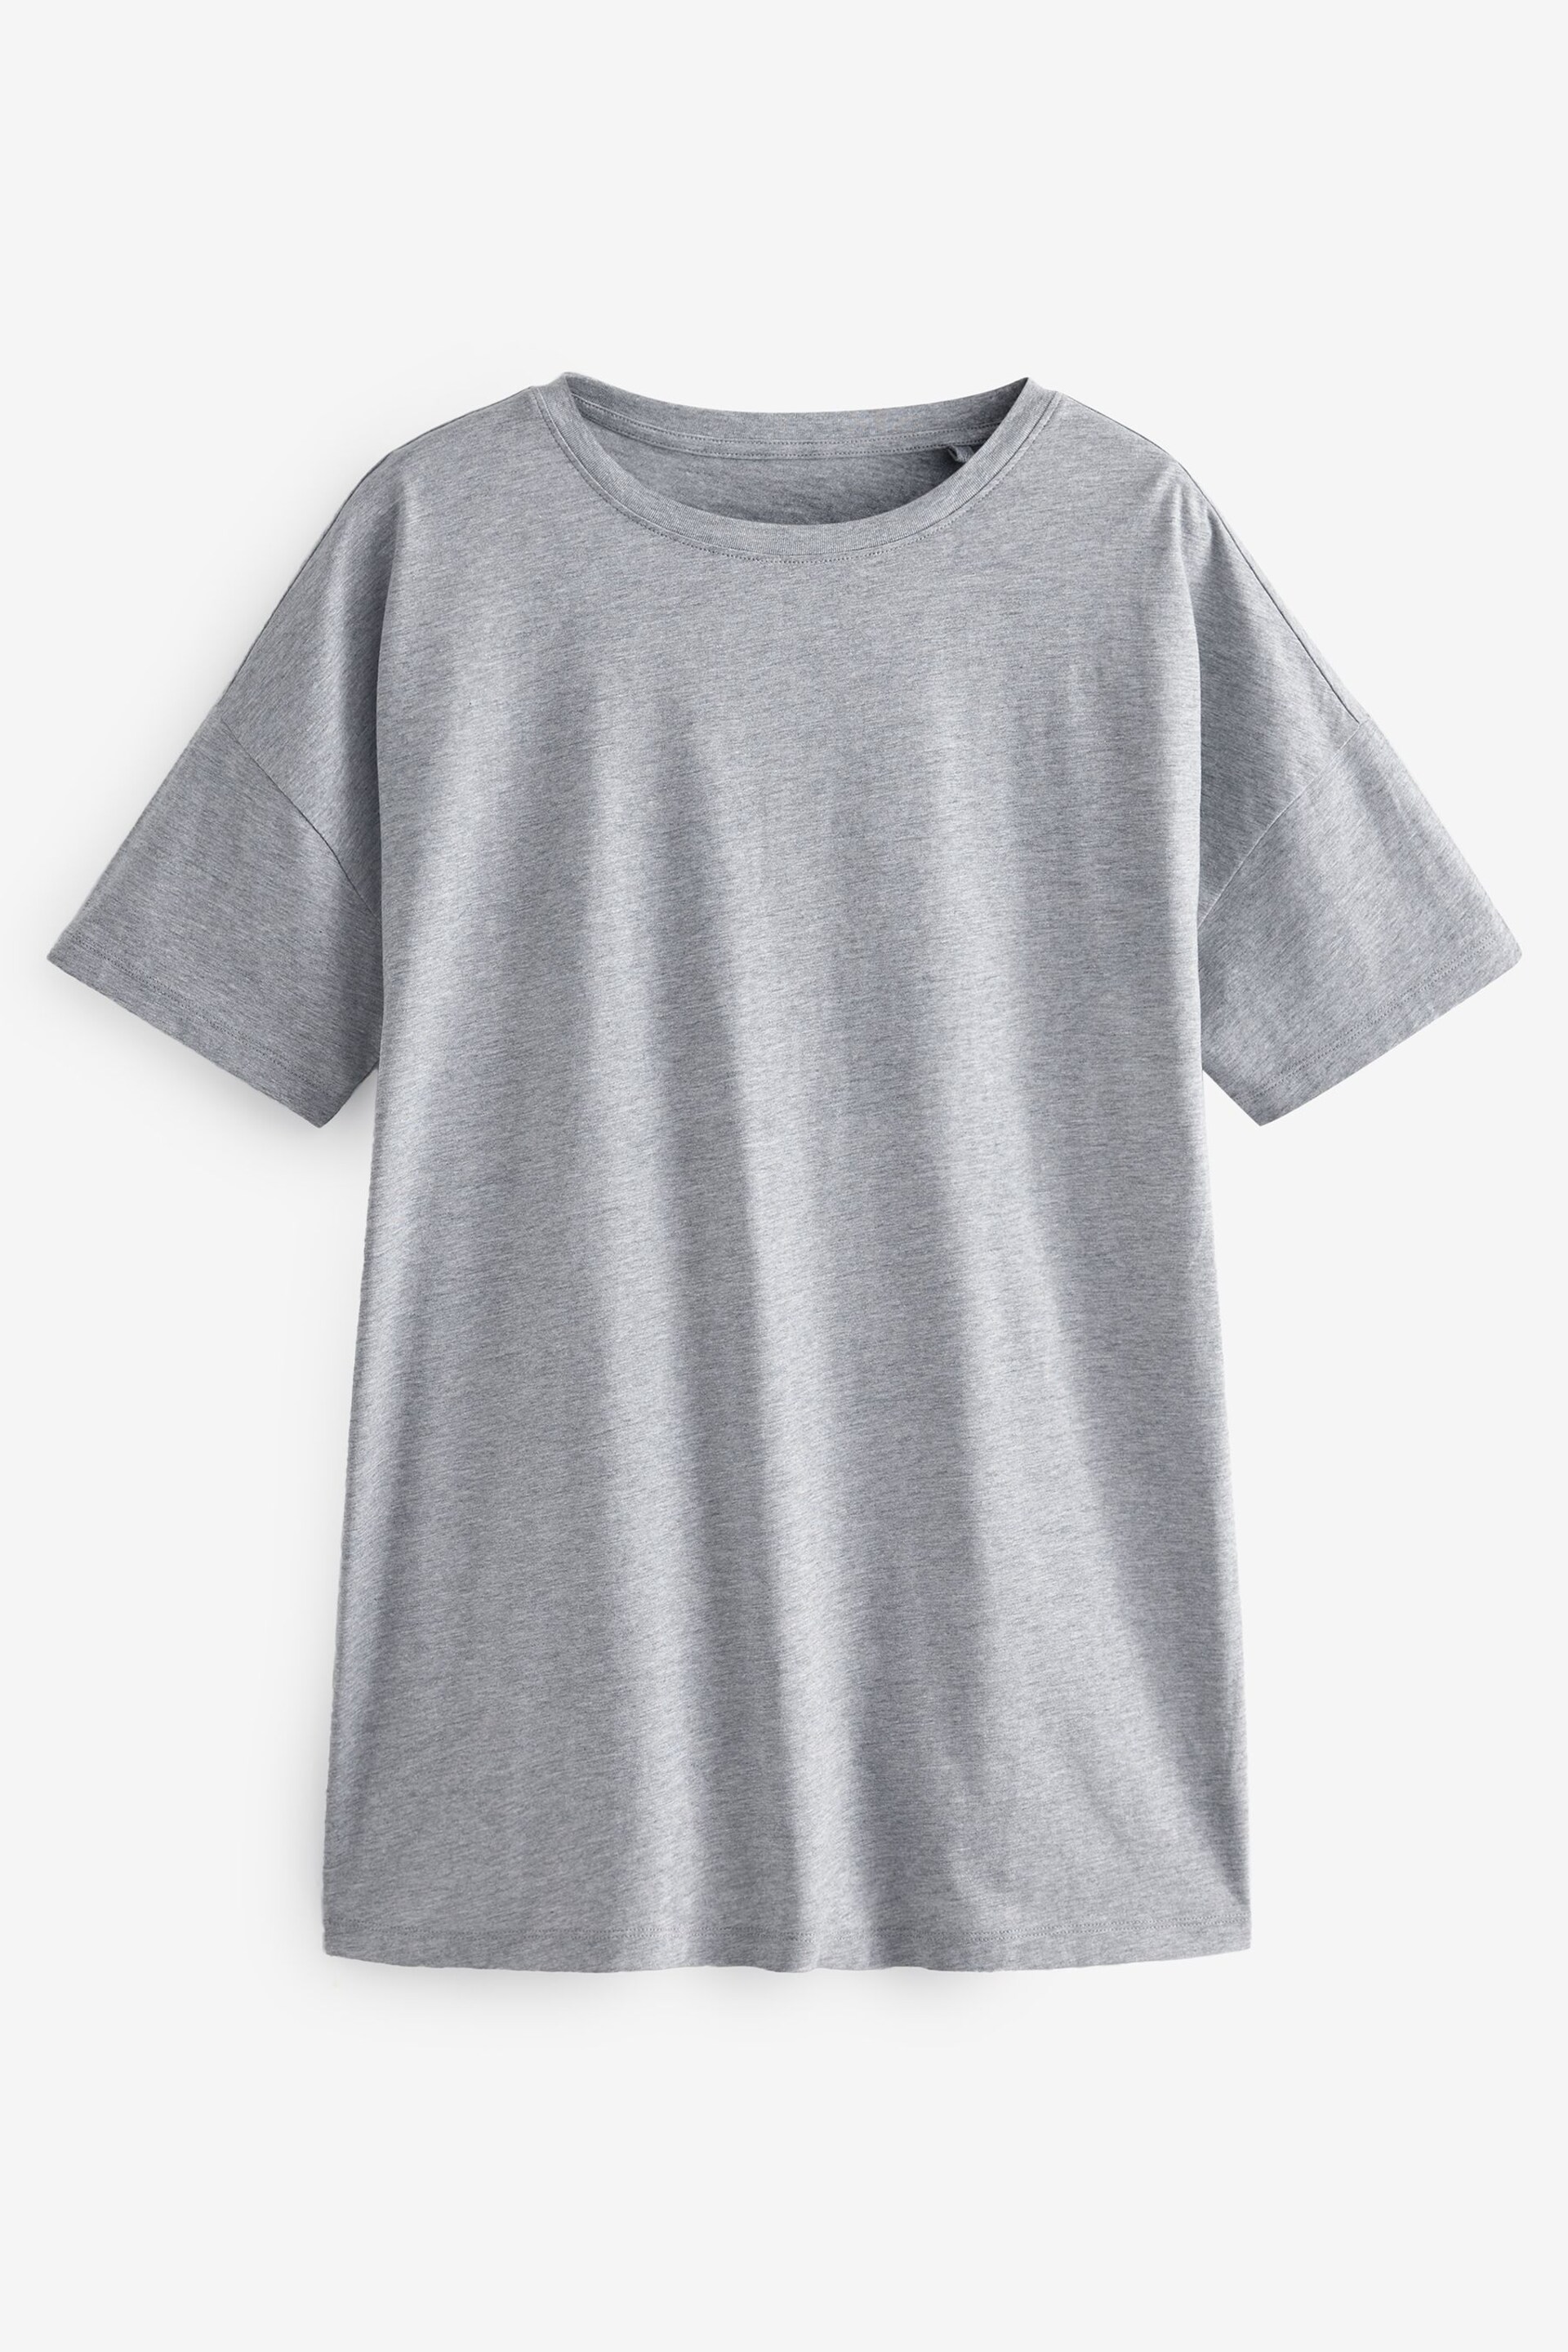 Grey Oversized T-Shirt - Image 5 of 5